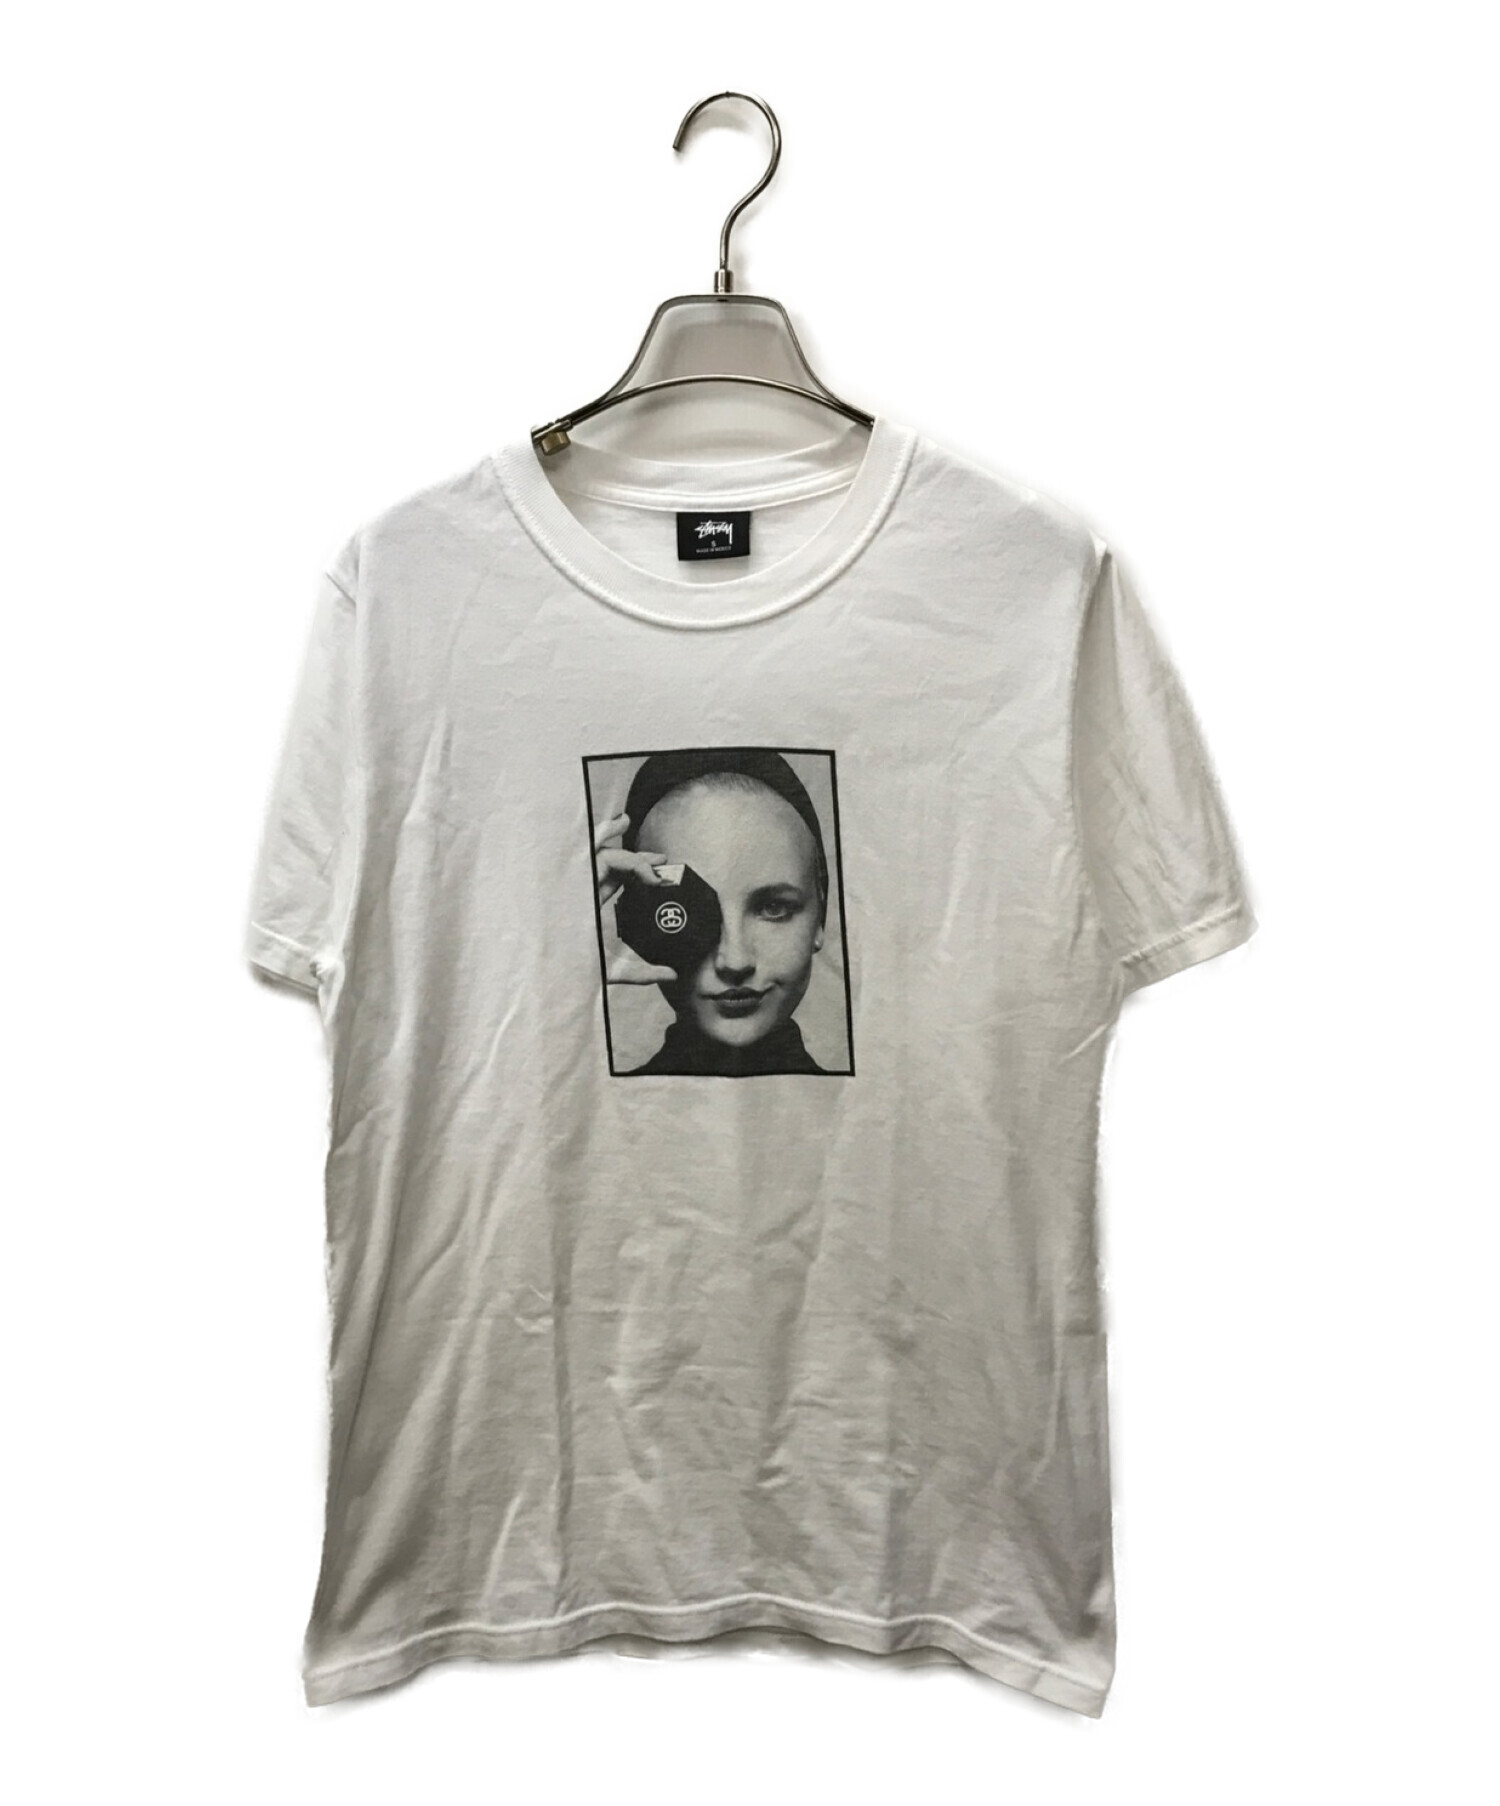 stussy (ステューシー) カール ラガーフェルド追悼 CHANELプリントTシャツ ホワイト サイズ:S